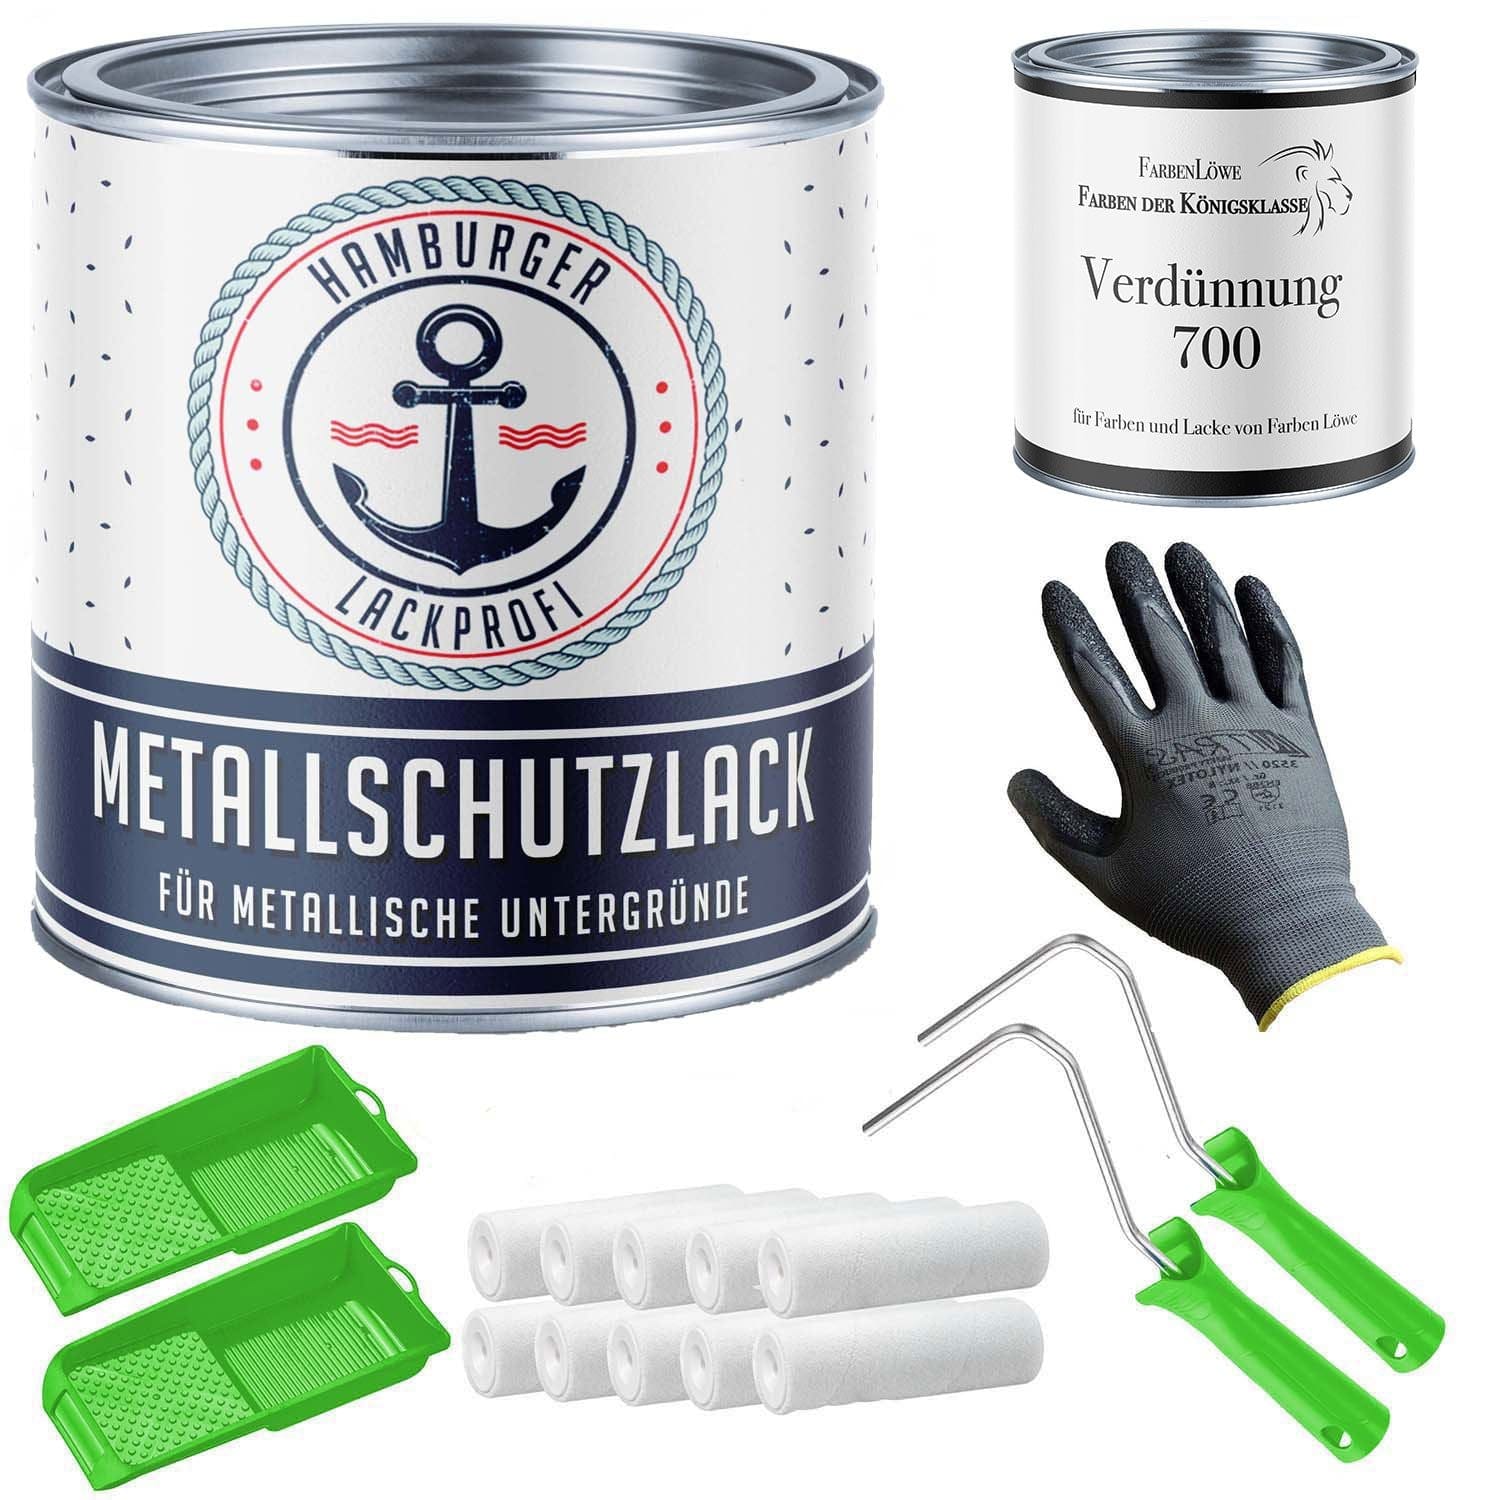 FARBENLÖWE Lacke & Beschichtungen Hamburger Lack-Profi Metallschutzlack in Gelbgrün RAL 6018 mit Lackierset (X300) & Verdünnung (1 L) - 30% Sparangebot